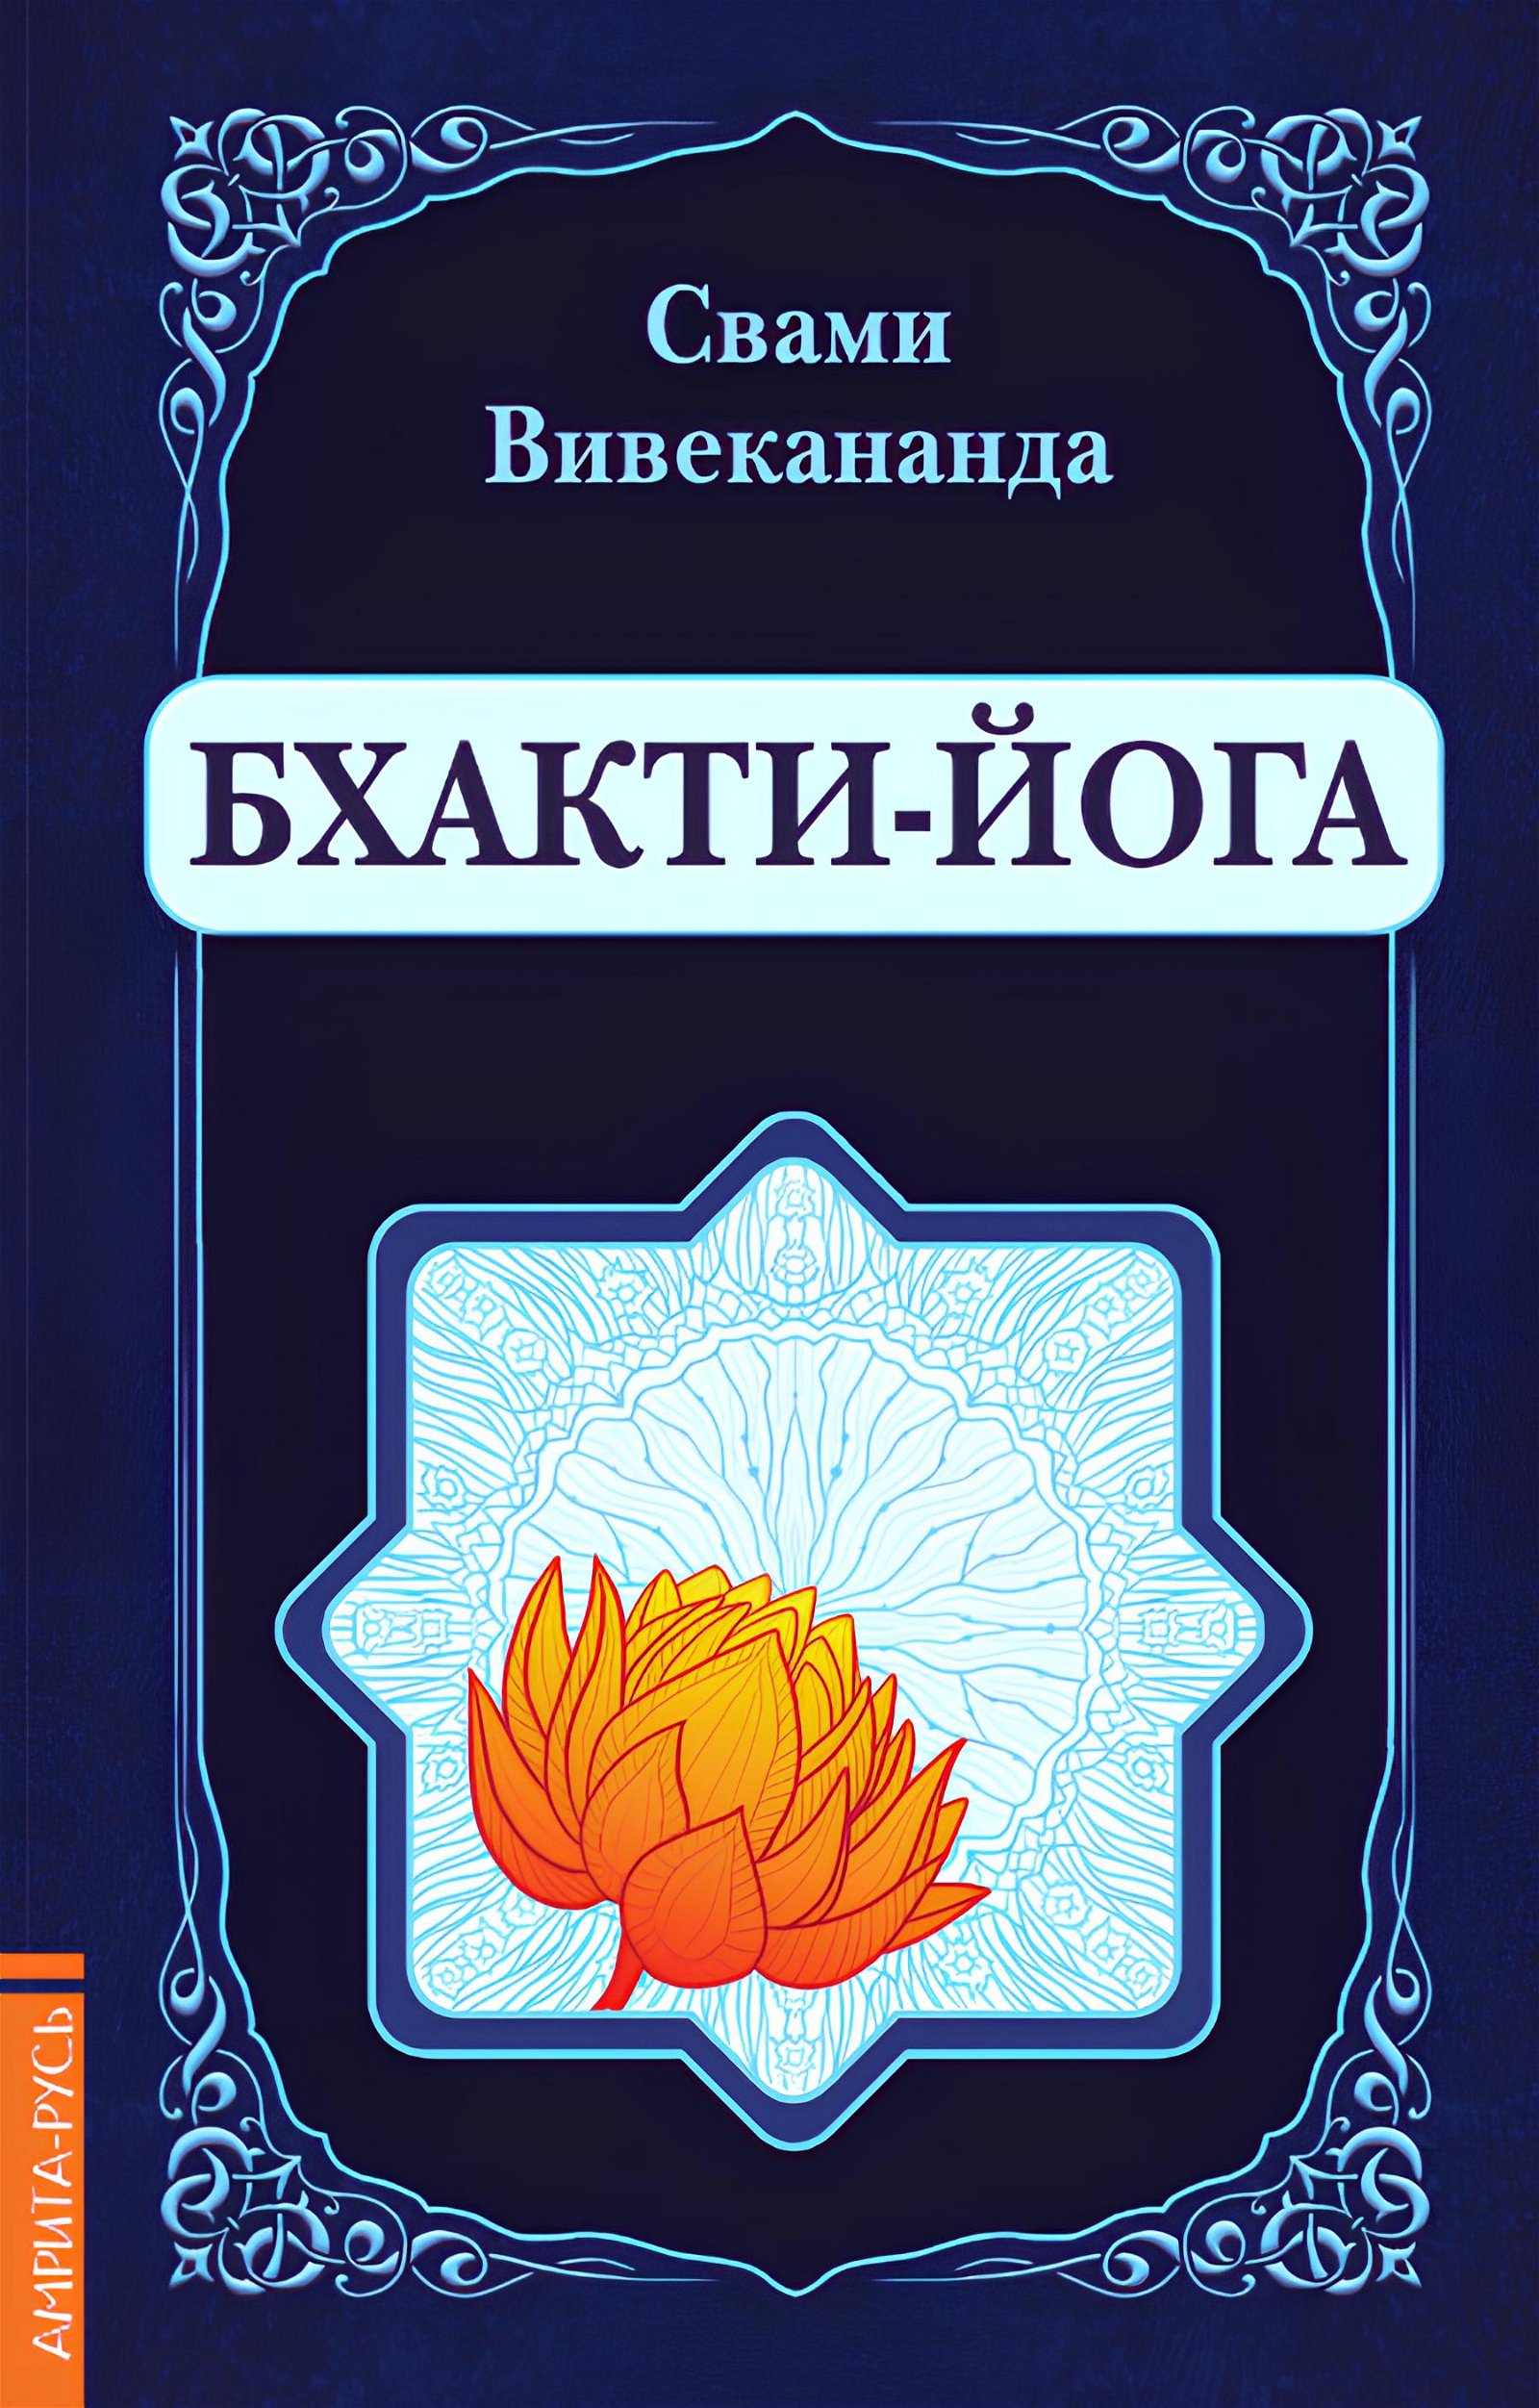 Купить книгу Бхакти-Йога Вивекананда Свами в интернет-магазине Ариаварта